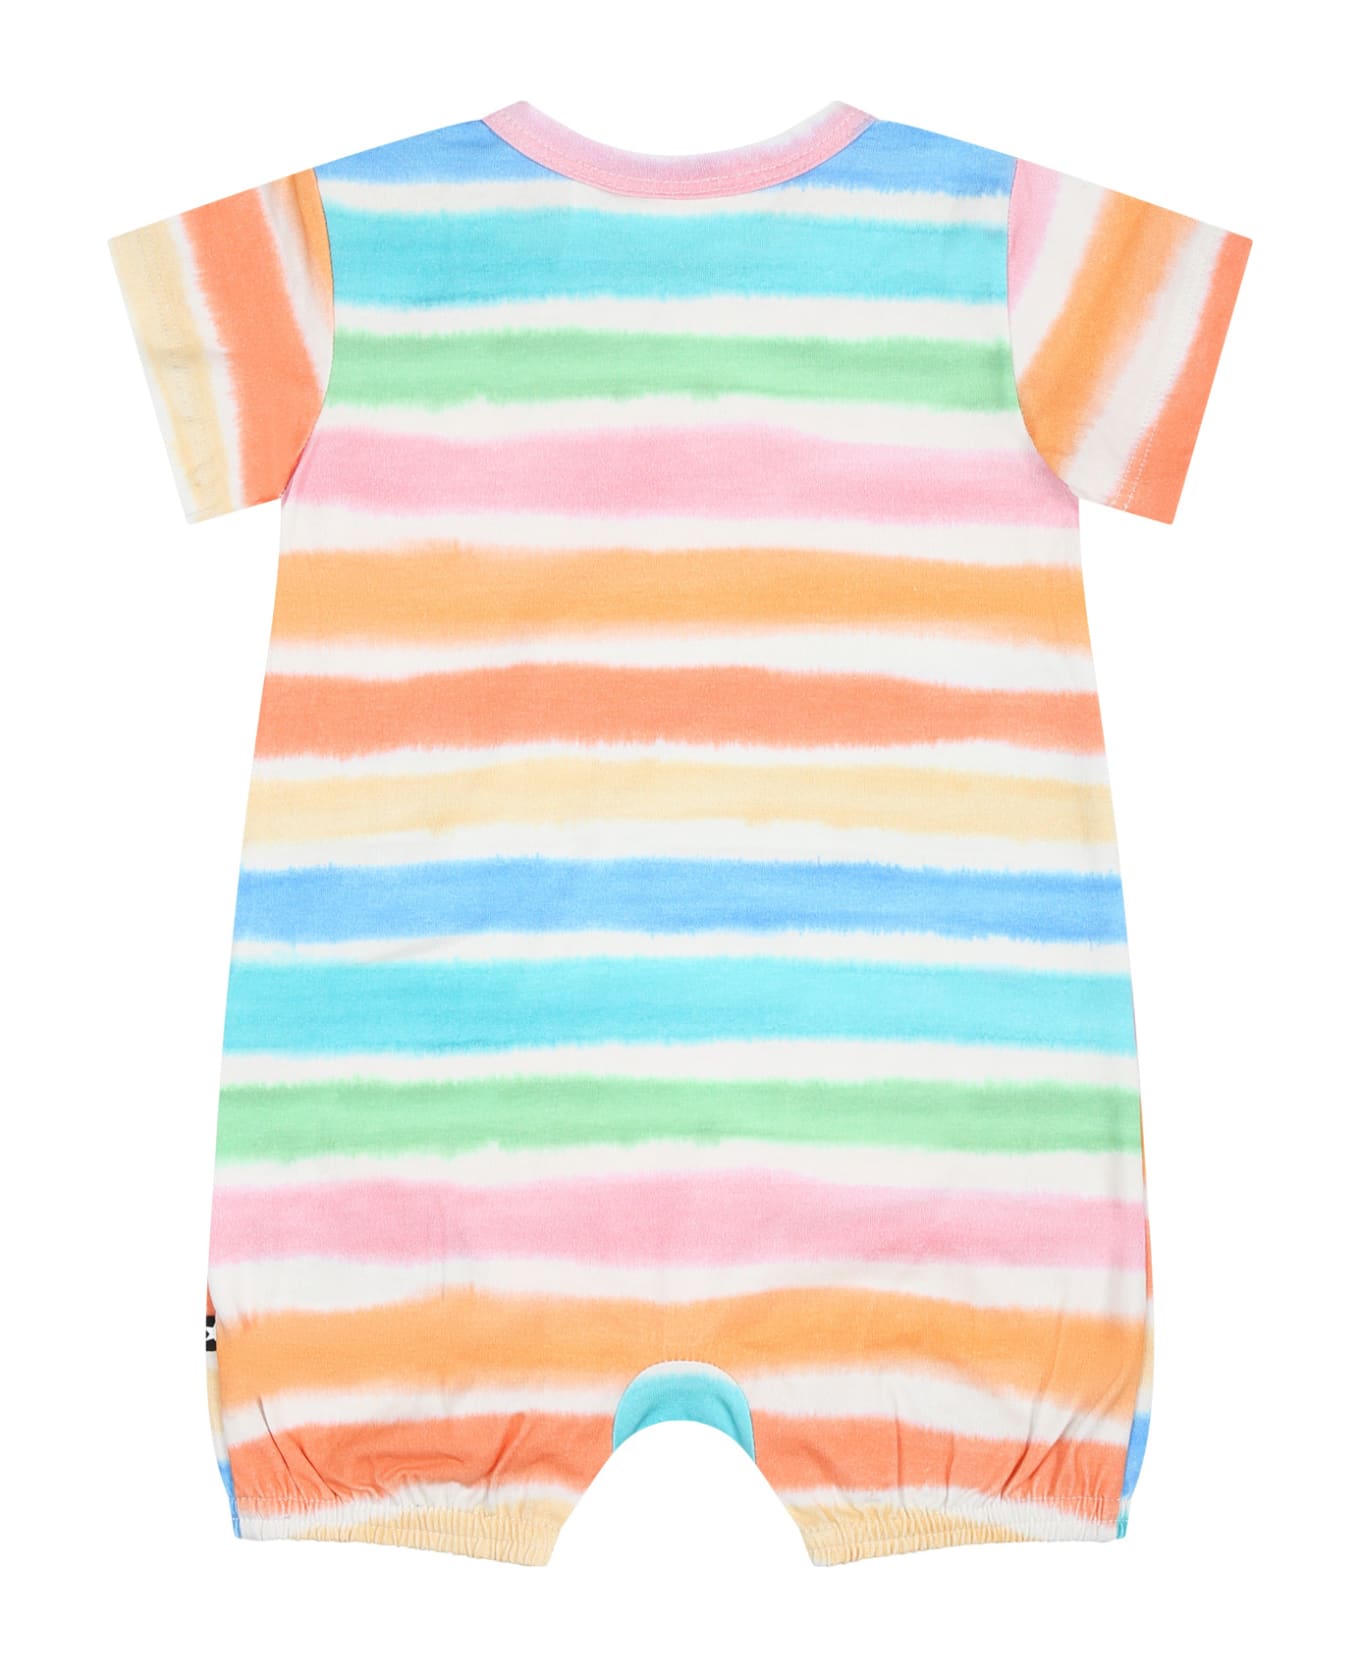 Molo Multicolor Romper For Baby Kids - Multicolor